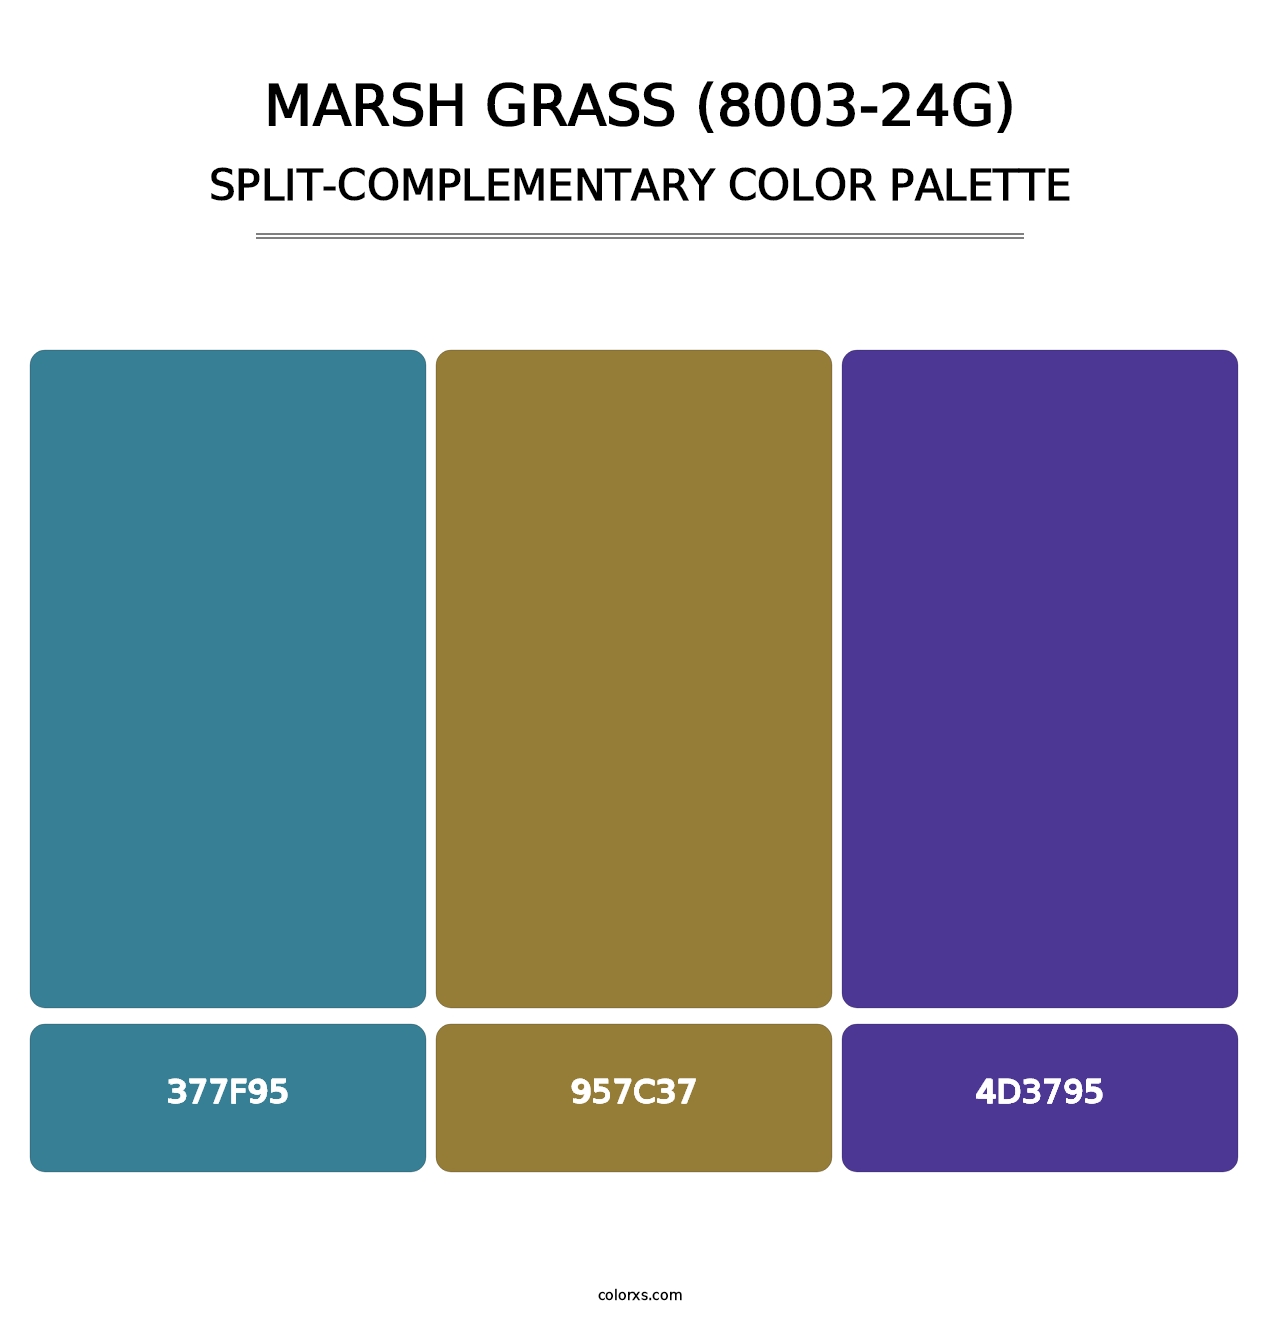 Marsh Grass (8003-24G) - Split-Complementary Color Palette